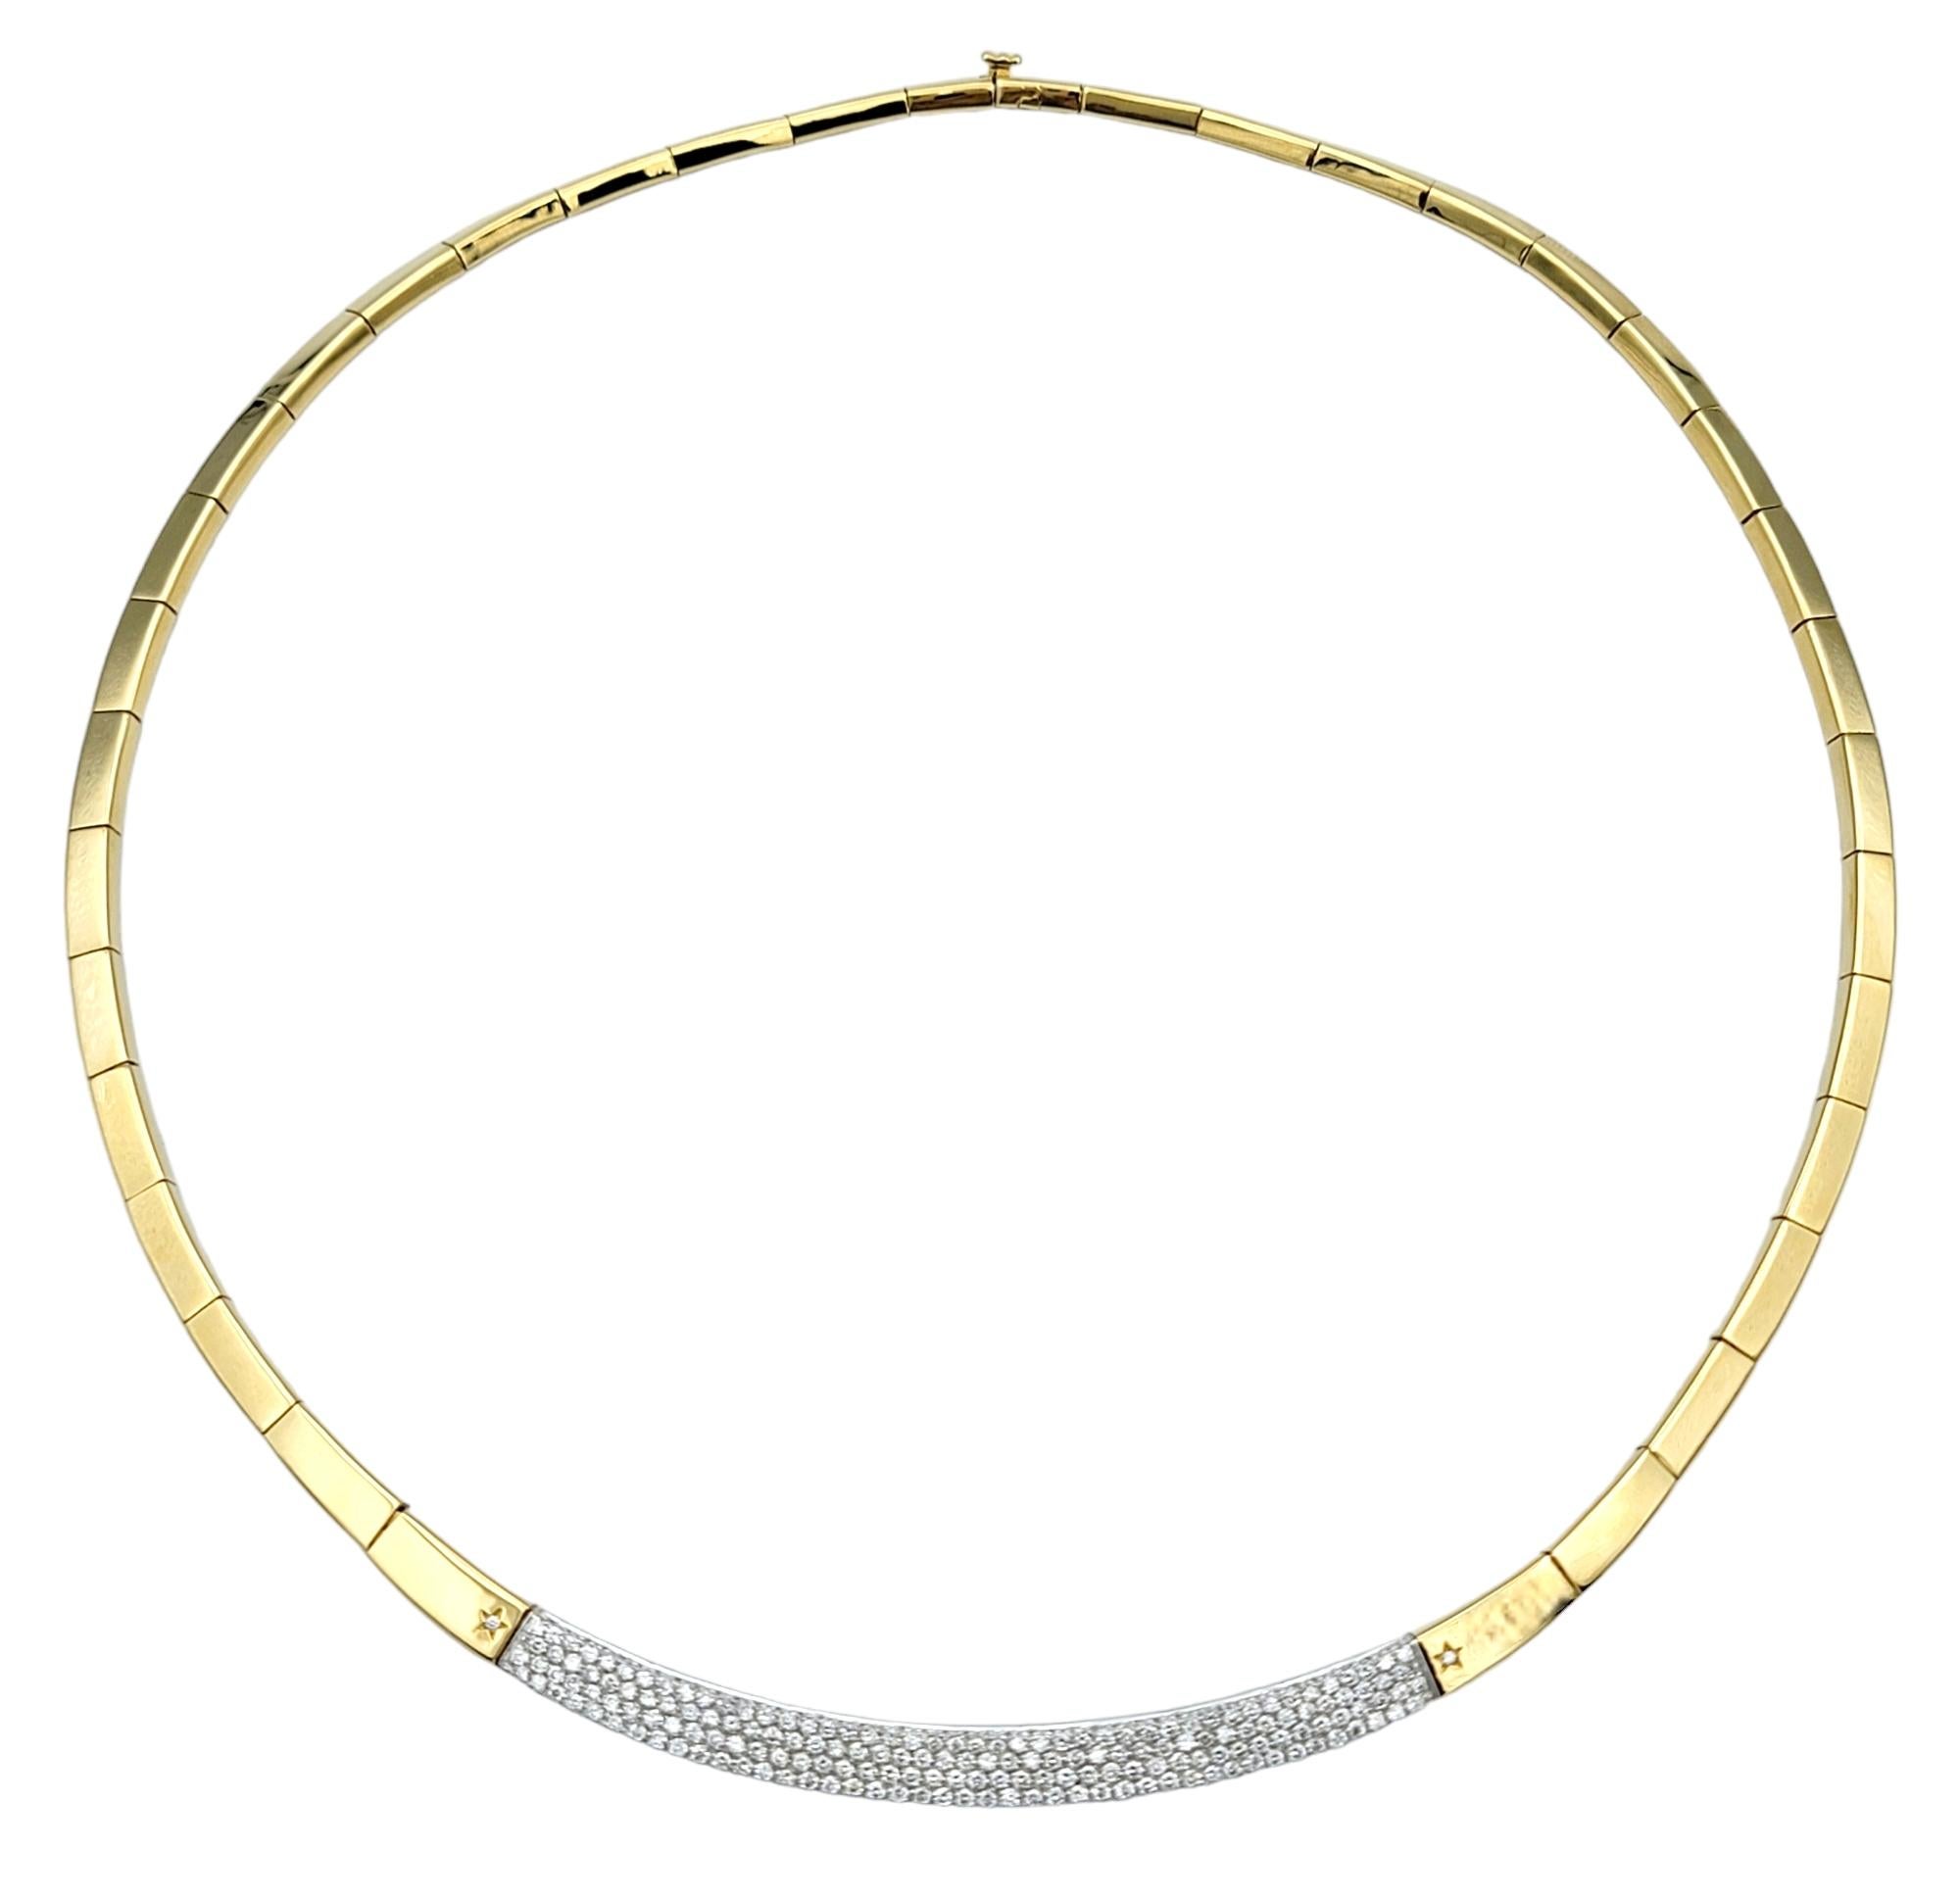 Opulenz und Raffinesse verströmend, ist dieses diamantene Halsband von H. Stern ein schillerndes Meisterwerk, gefasst in strahlendem 18-karätigem Gelbgold. Die Basis der Halskette ist sorgfältig mit schimmernden Pave-Diamanten verziert, die eine